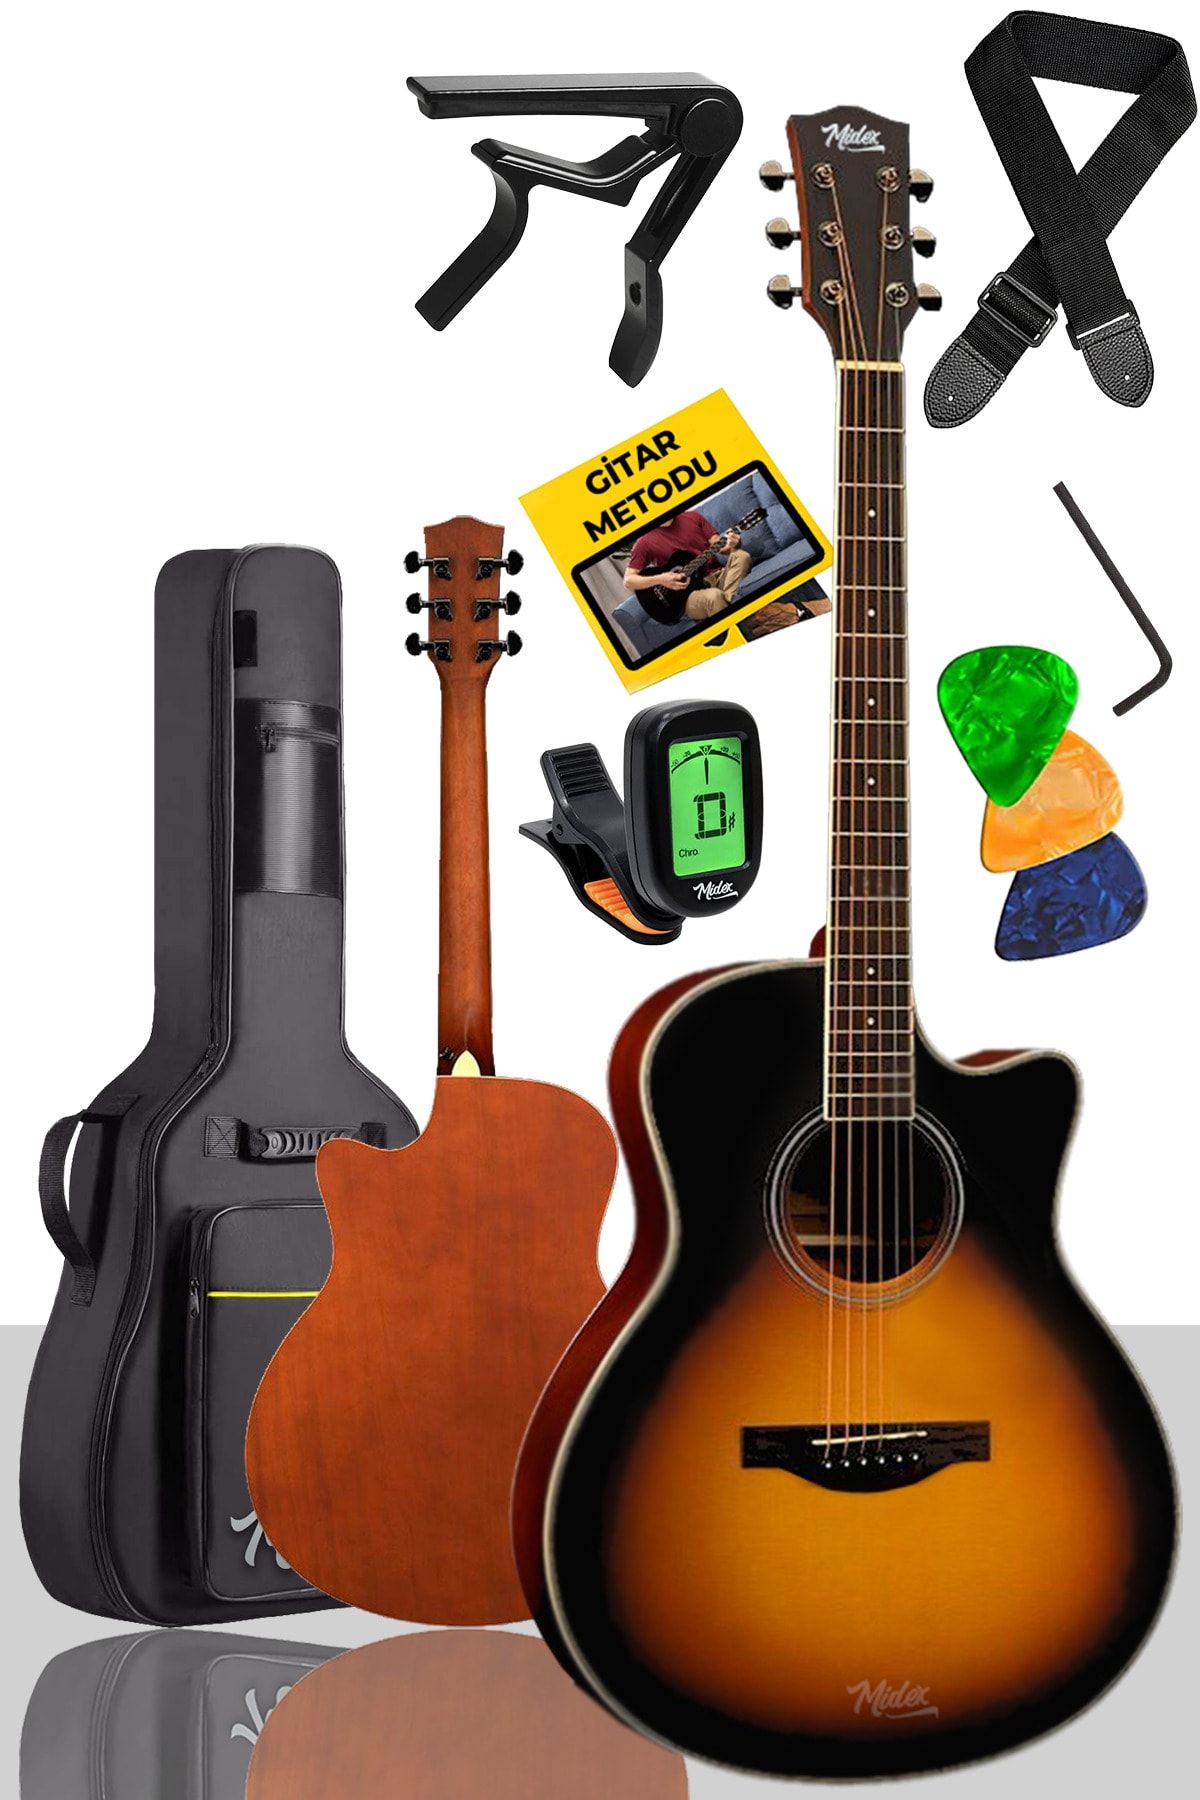 Midex Xc-400 Sunburs Akustik Gitar 4/4 Yetişkin Boy (ÇANTA TUNER ASKI CAPO)